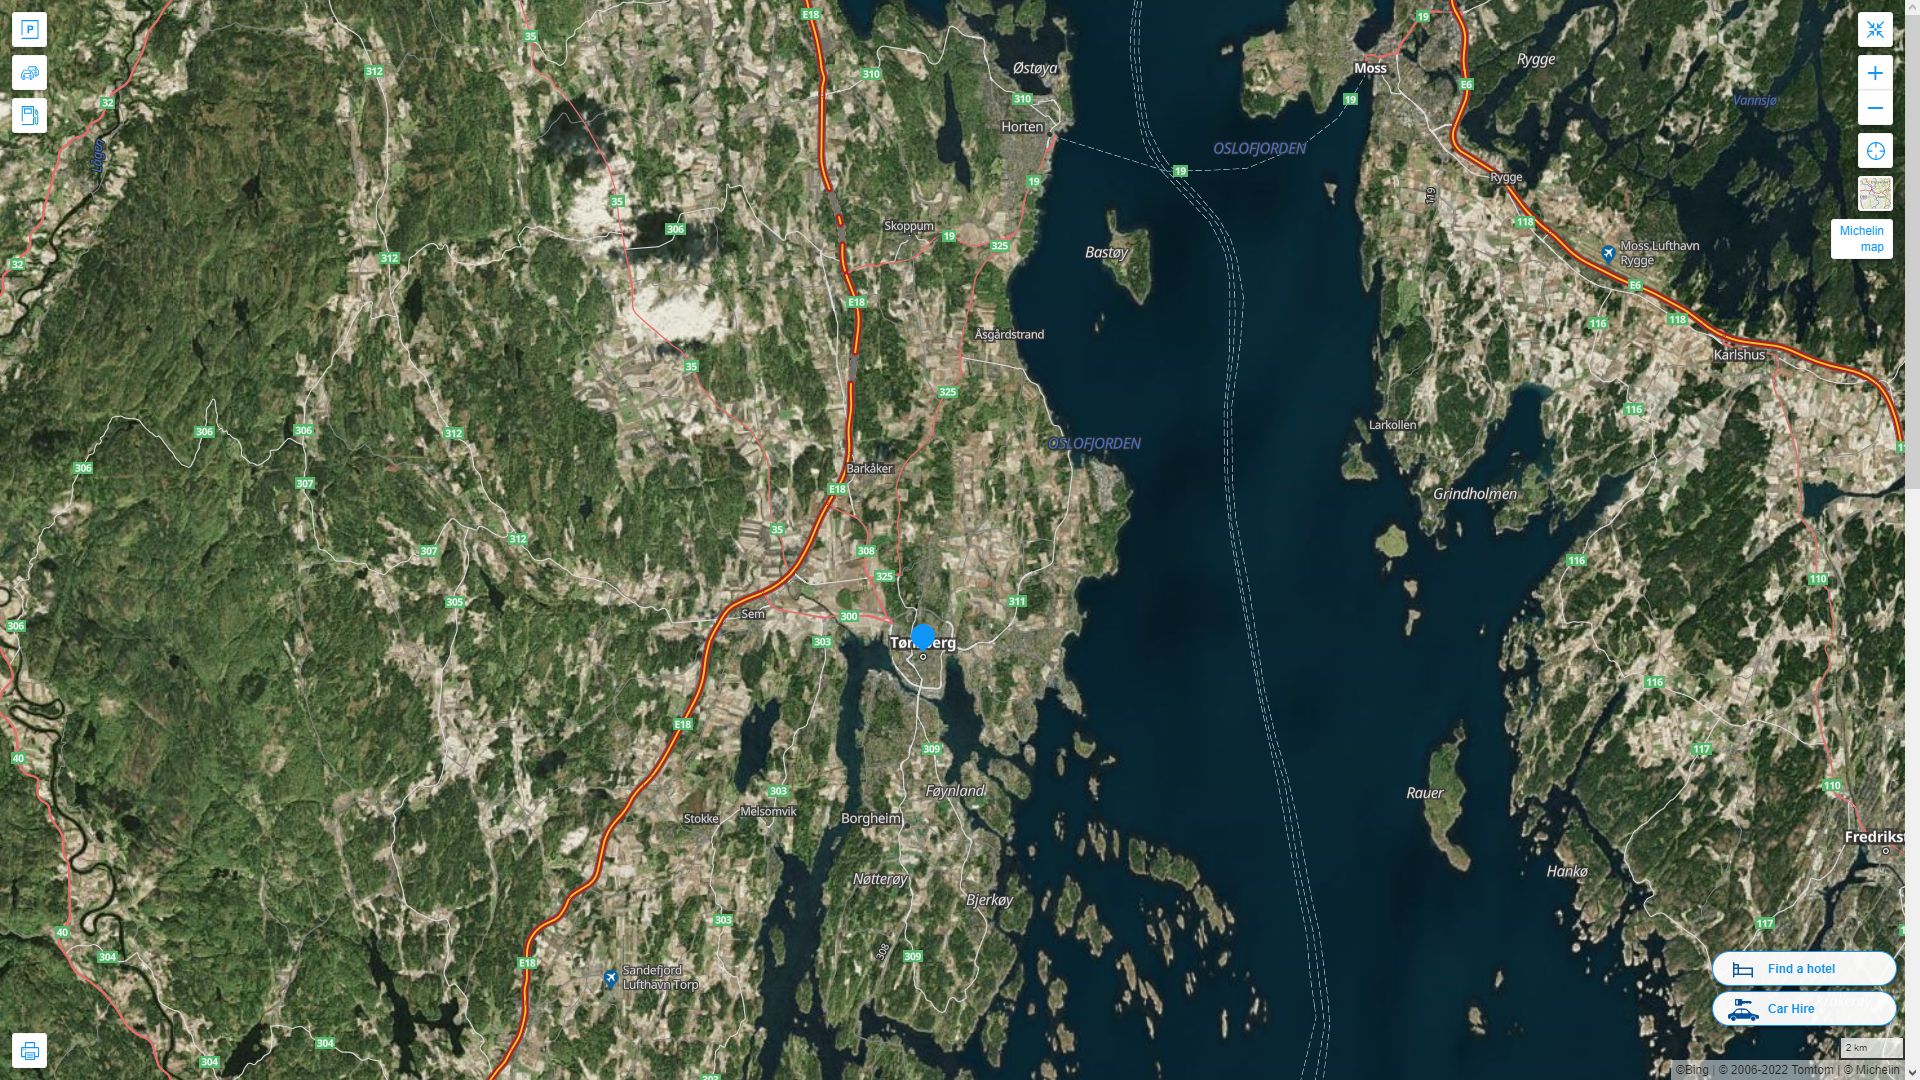 Tonsberg Norvege Autoroute et carte routiere avec vue satellite